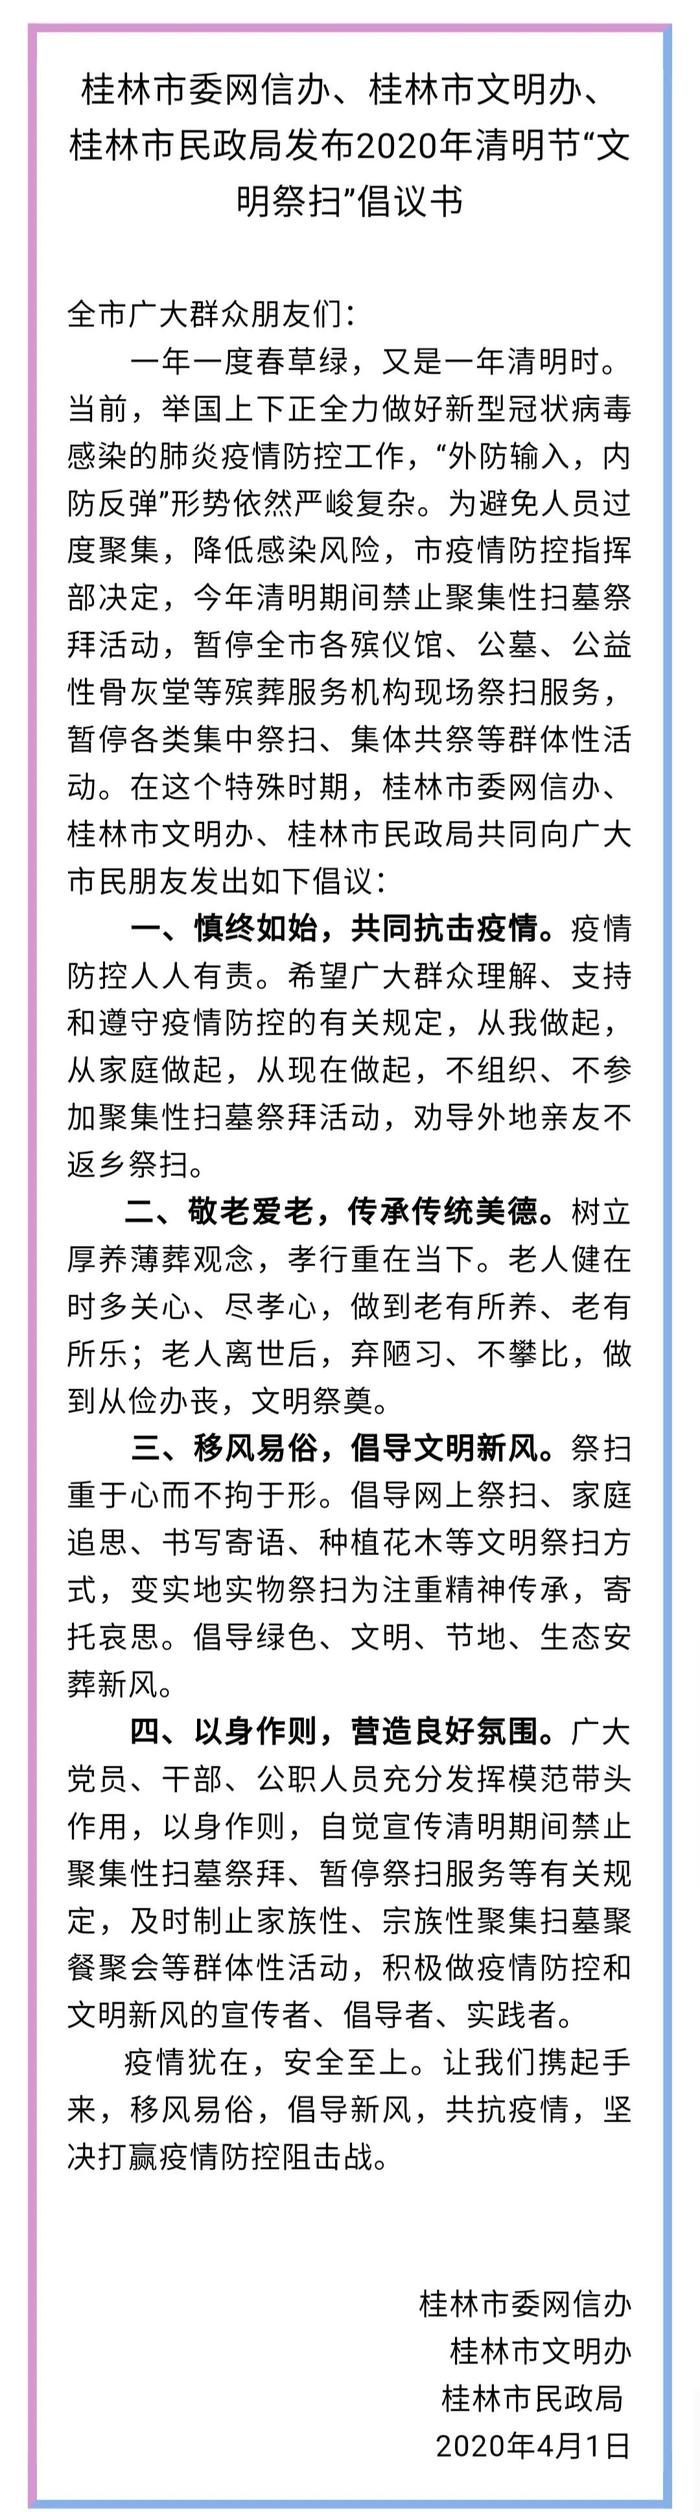 【重要】桂林交警发布加强清明期间疫情防控对墓园周边道路进行交通管制工作的通告